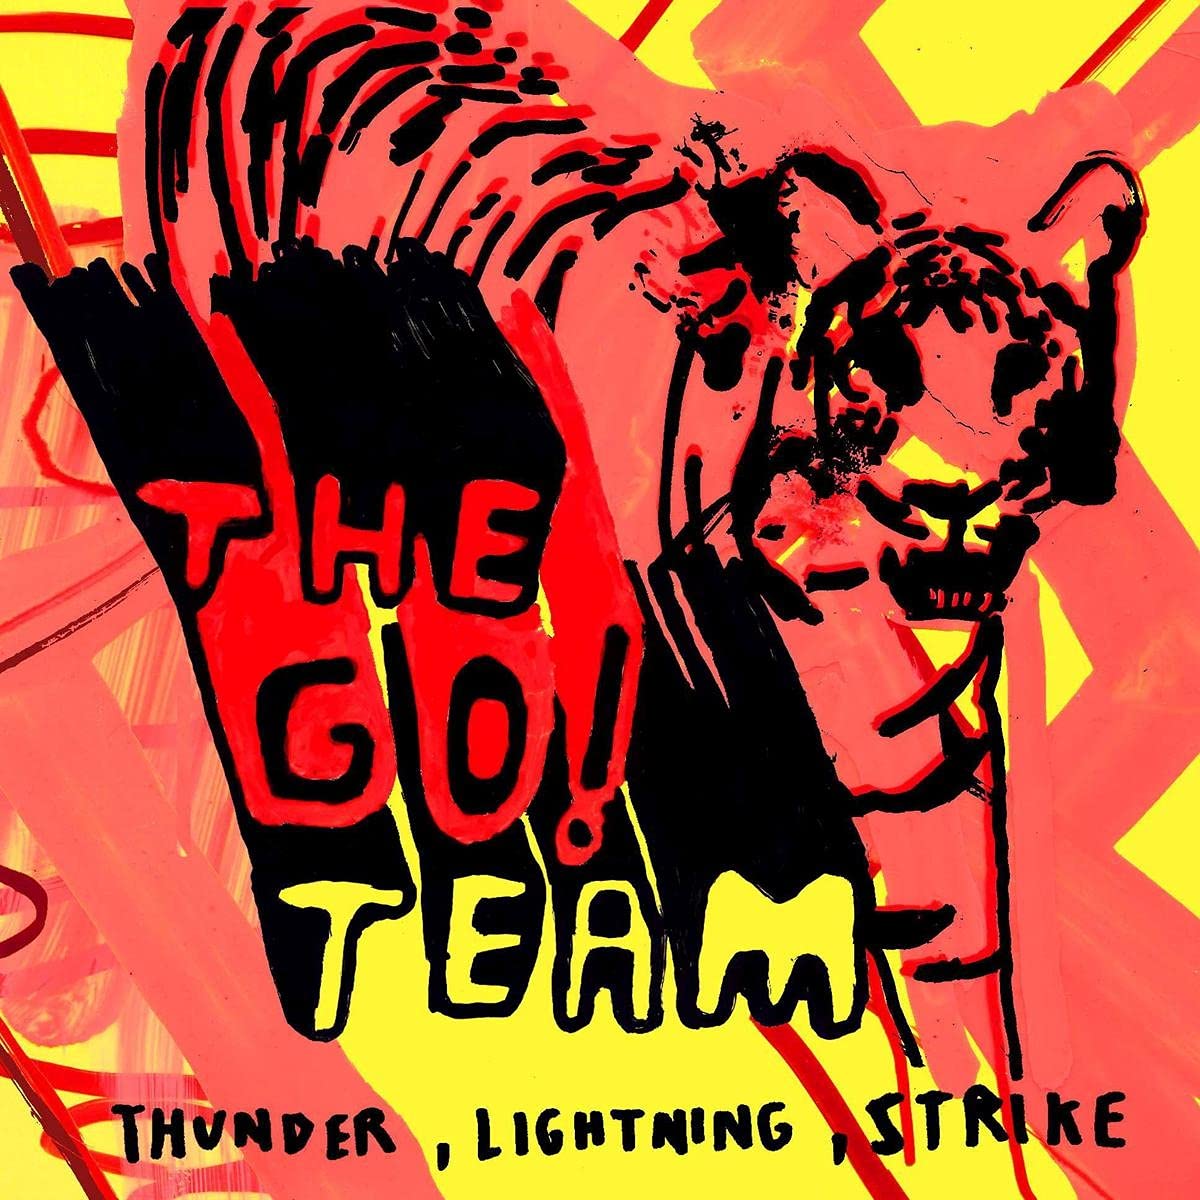 Thunder Lightning Strike - Black Vinyl Reissue [Vinyl LP]